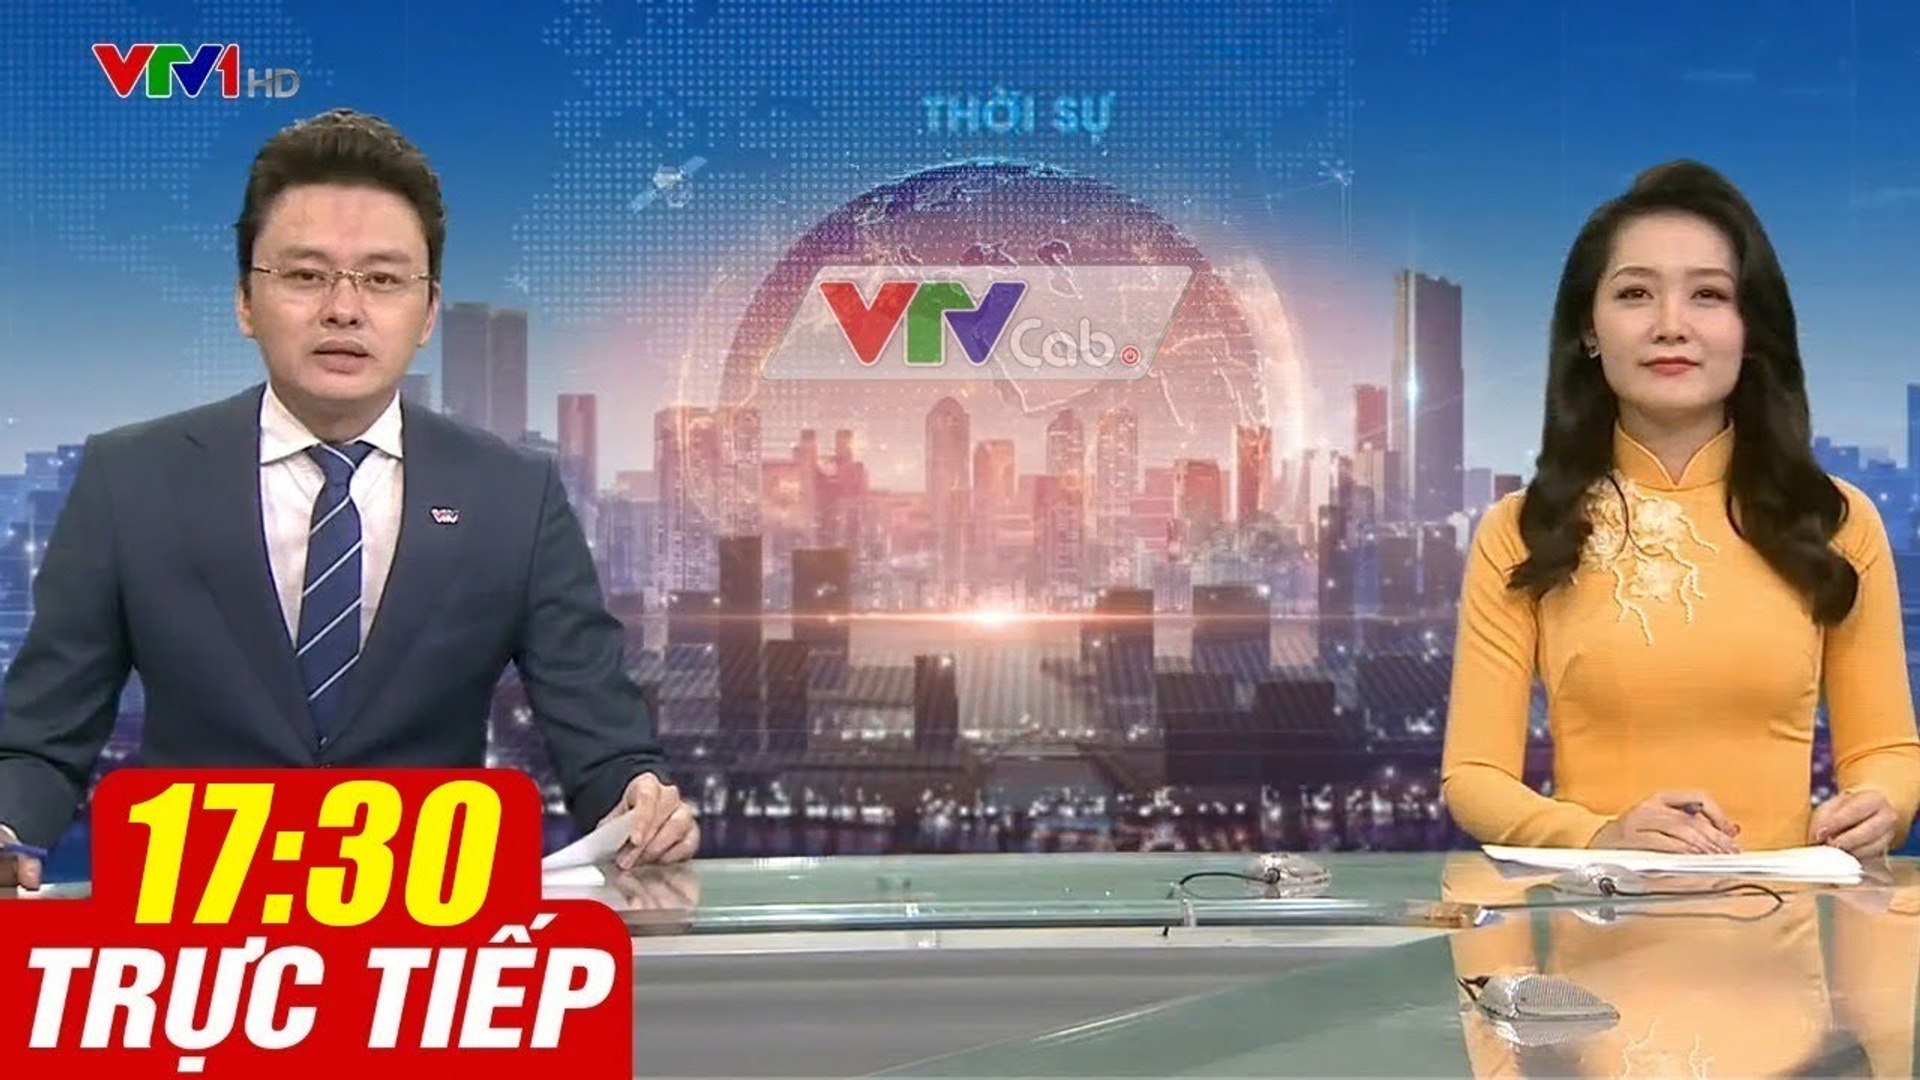 Trực Tiếp VIỆT NAM HÔM NAY 17h30 ngày 30.08.2020  Tin tức thời sự VTV1 mới nhất hôm nay